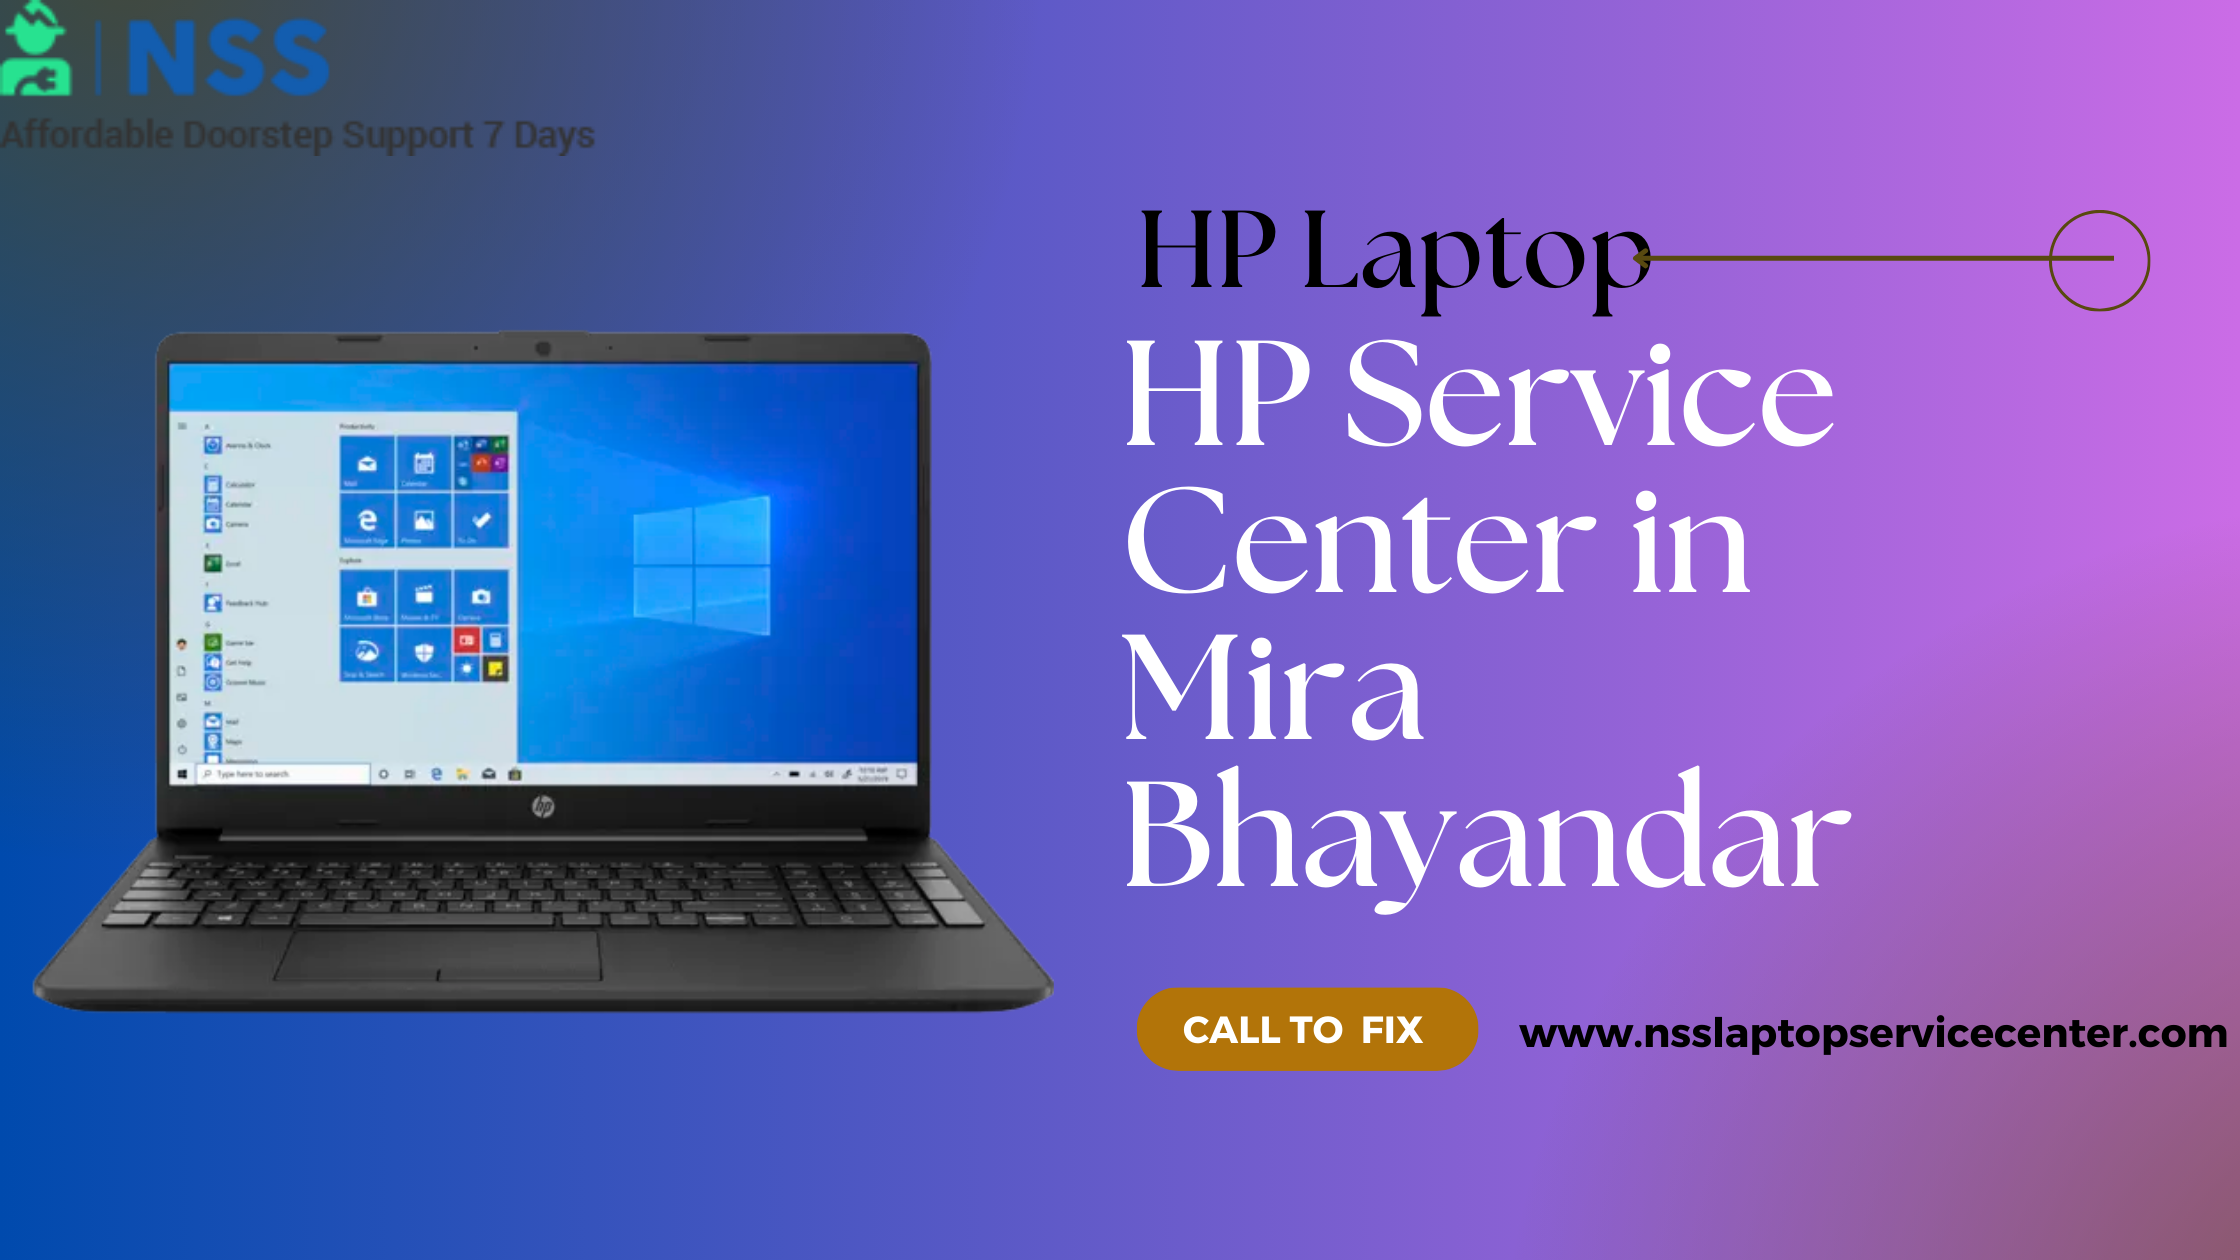 HP Service Center in Mira Bhayandar Near Mumbai